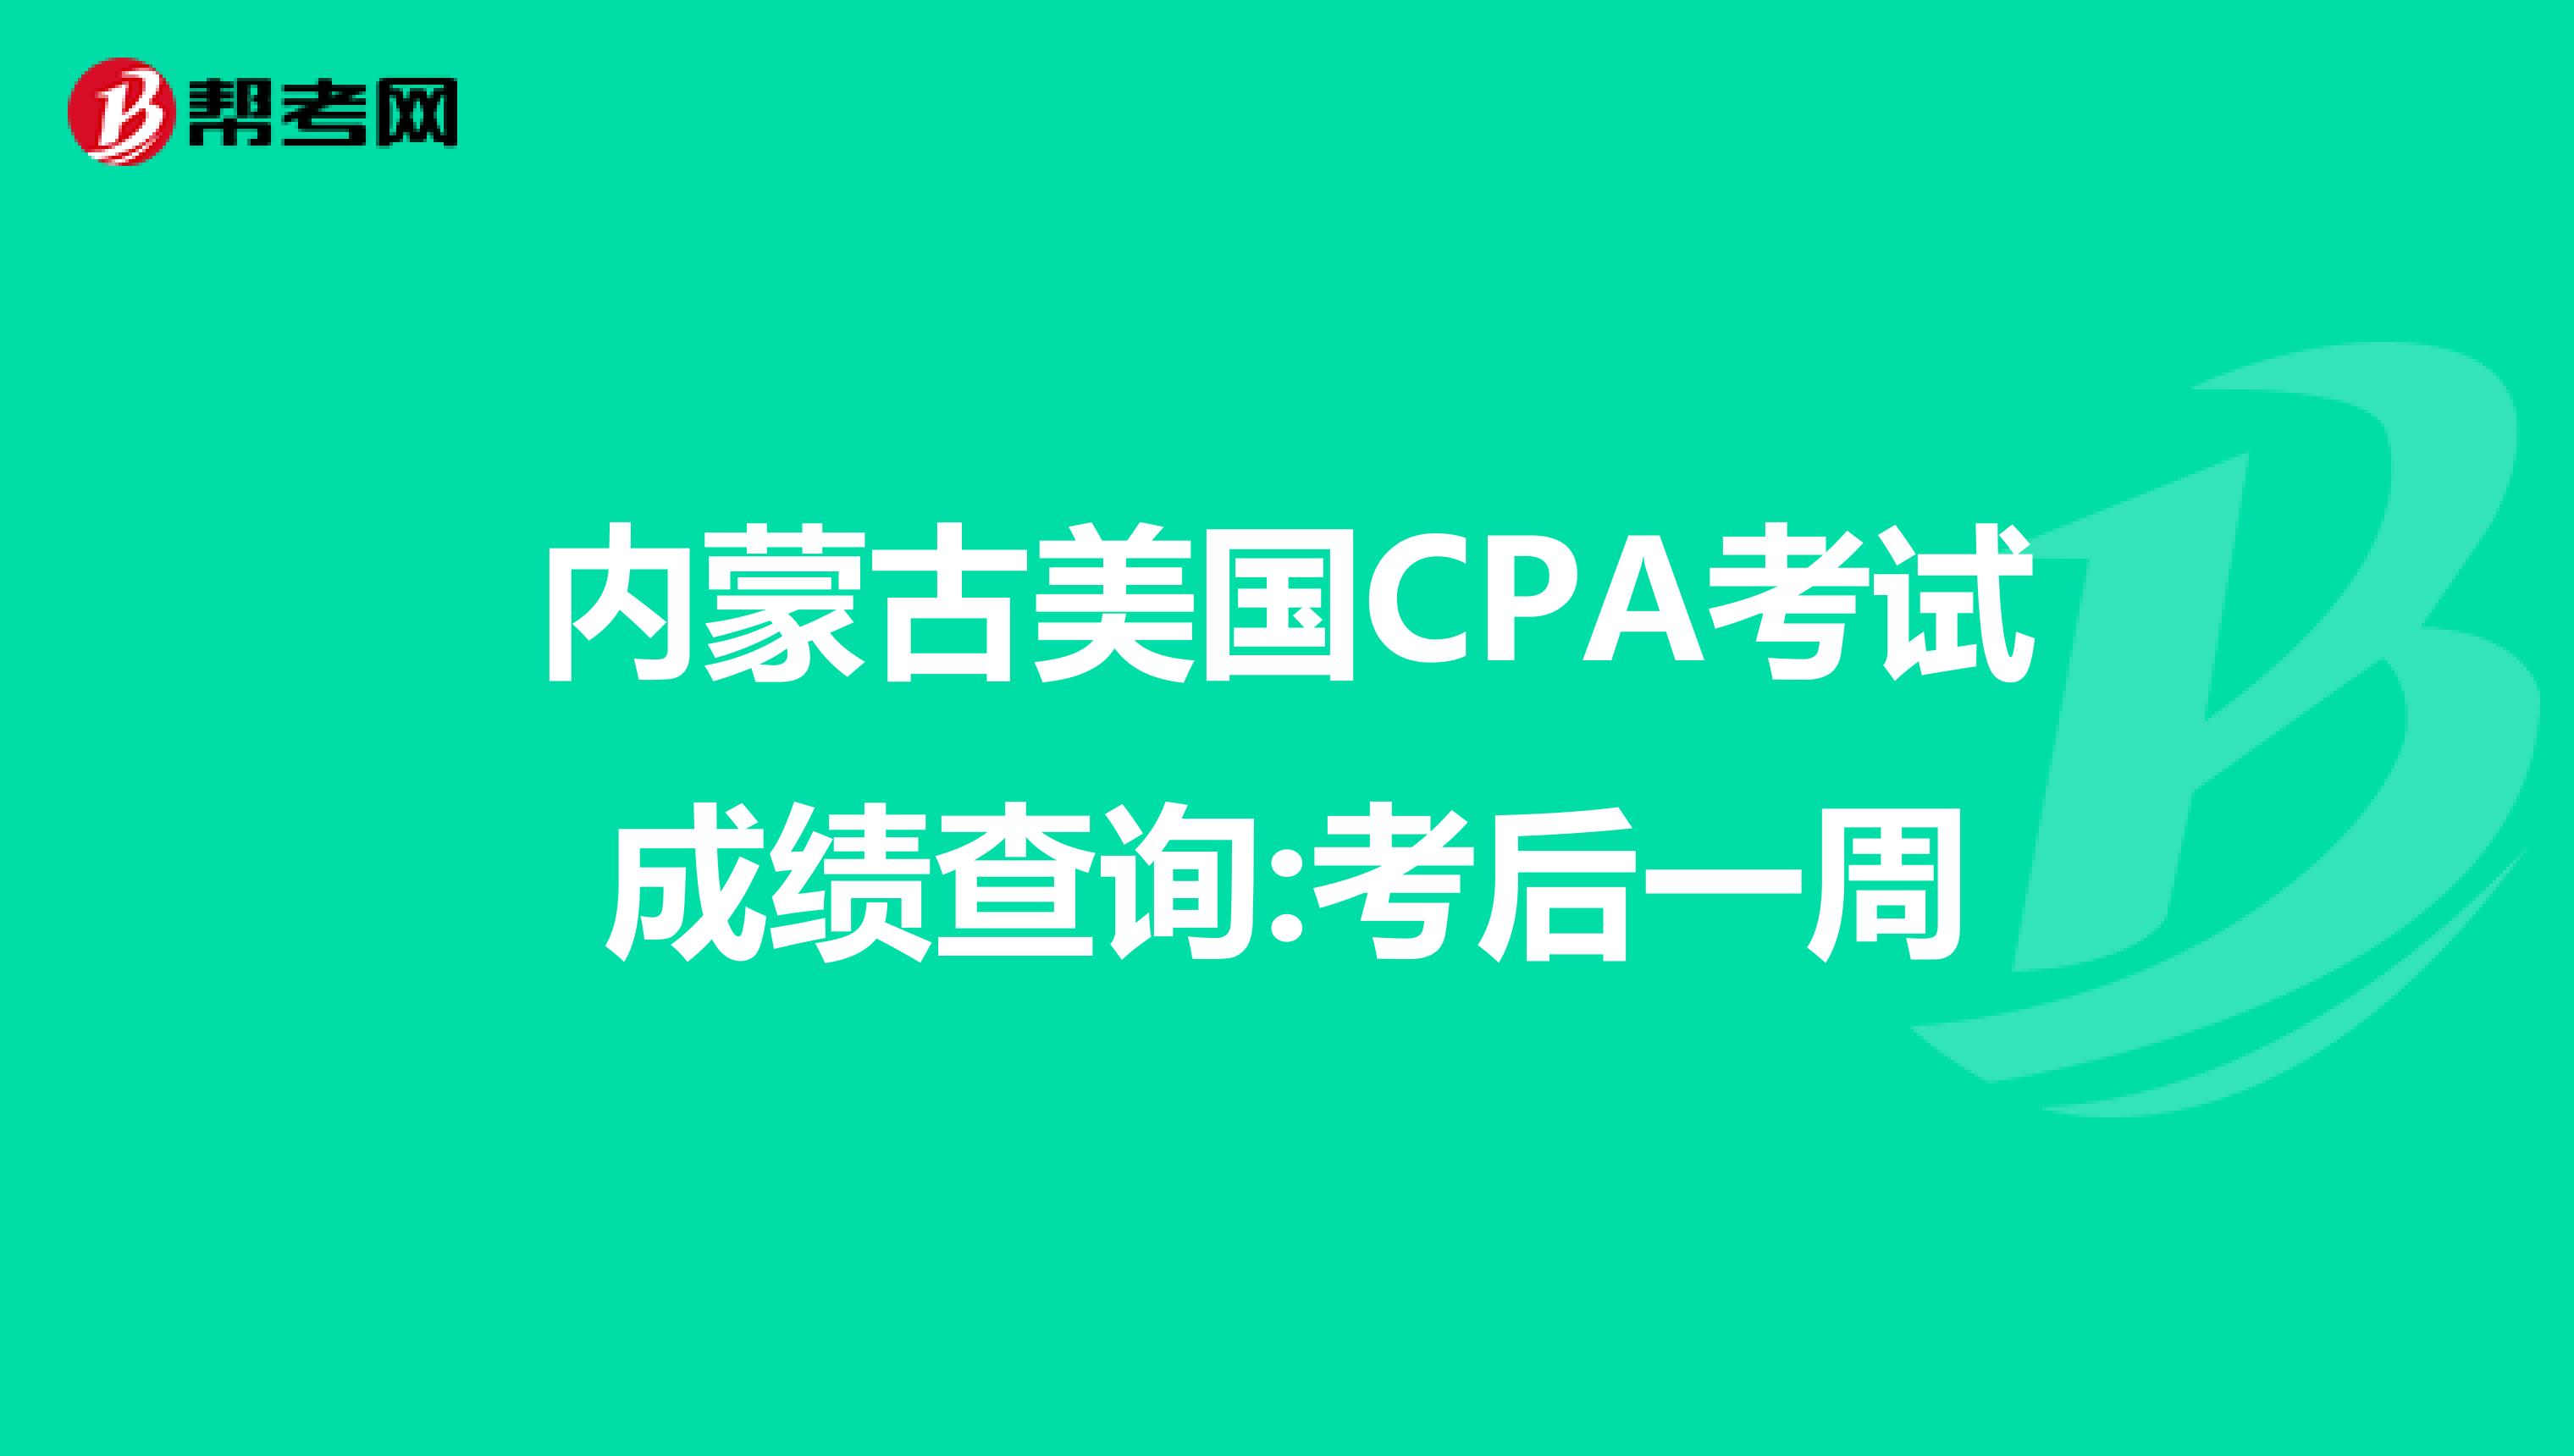 内蒙古美国CPA考试成绩查询:考后一周